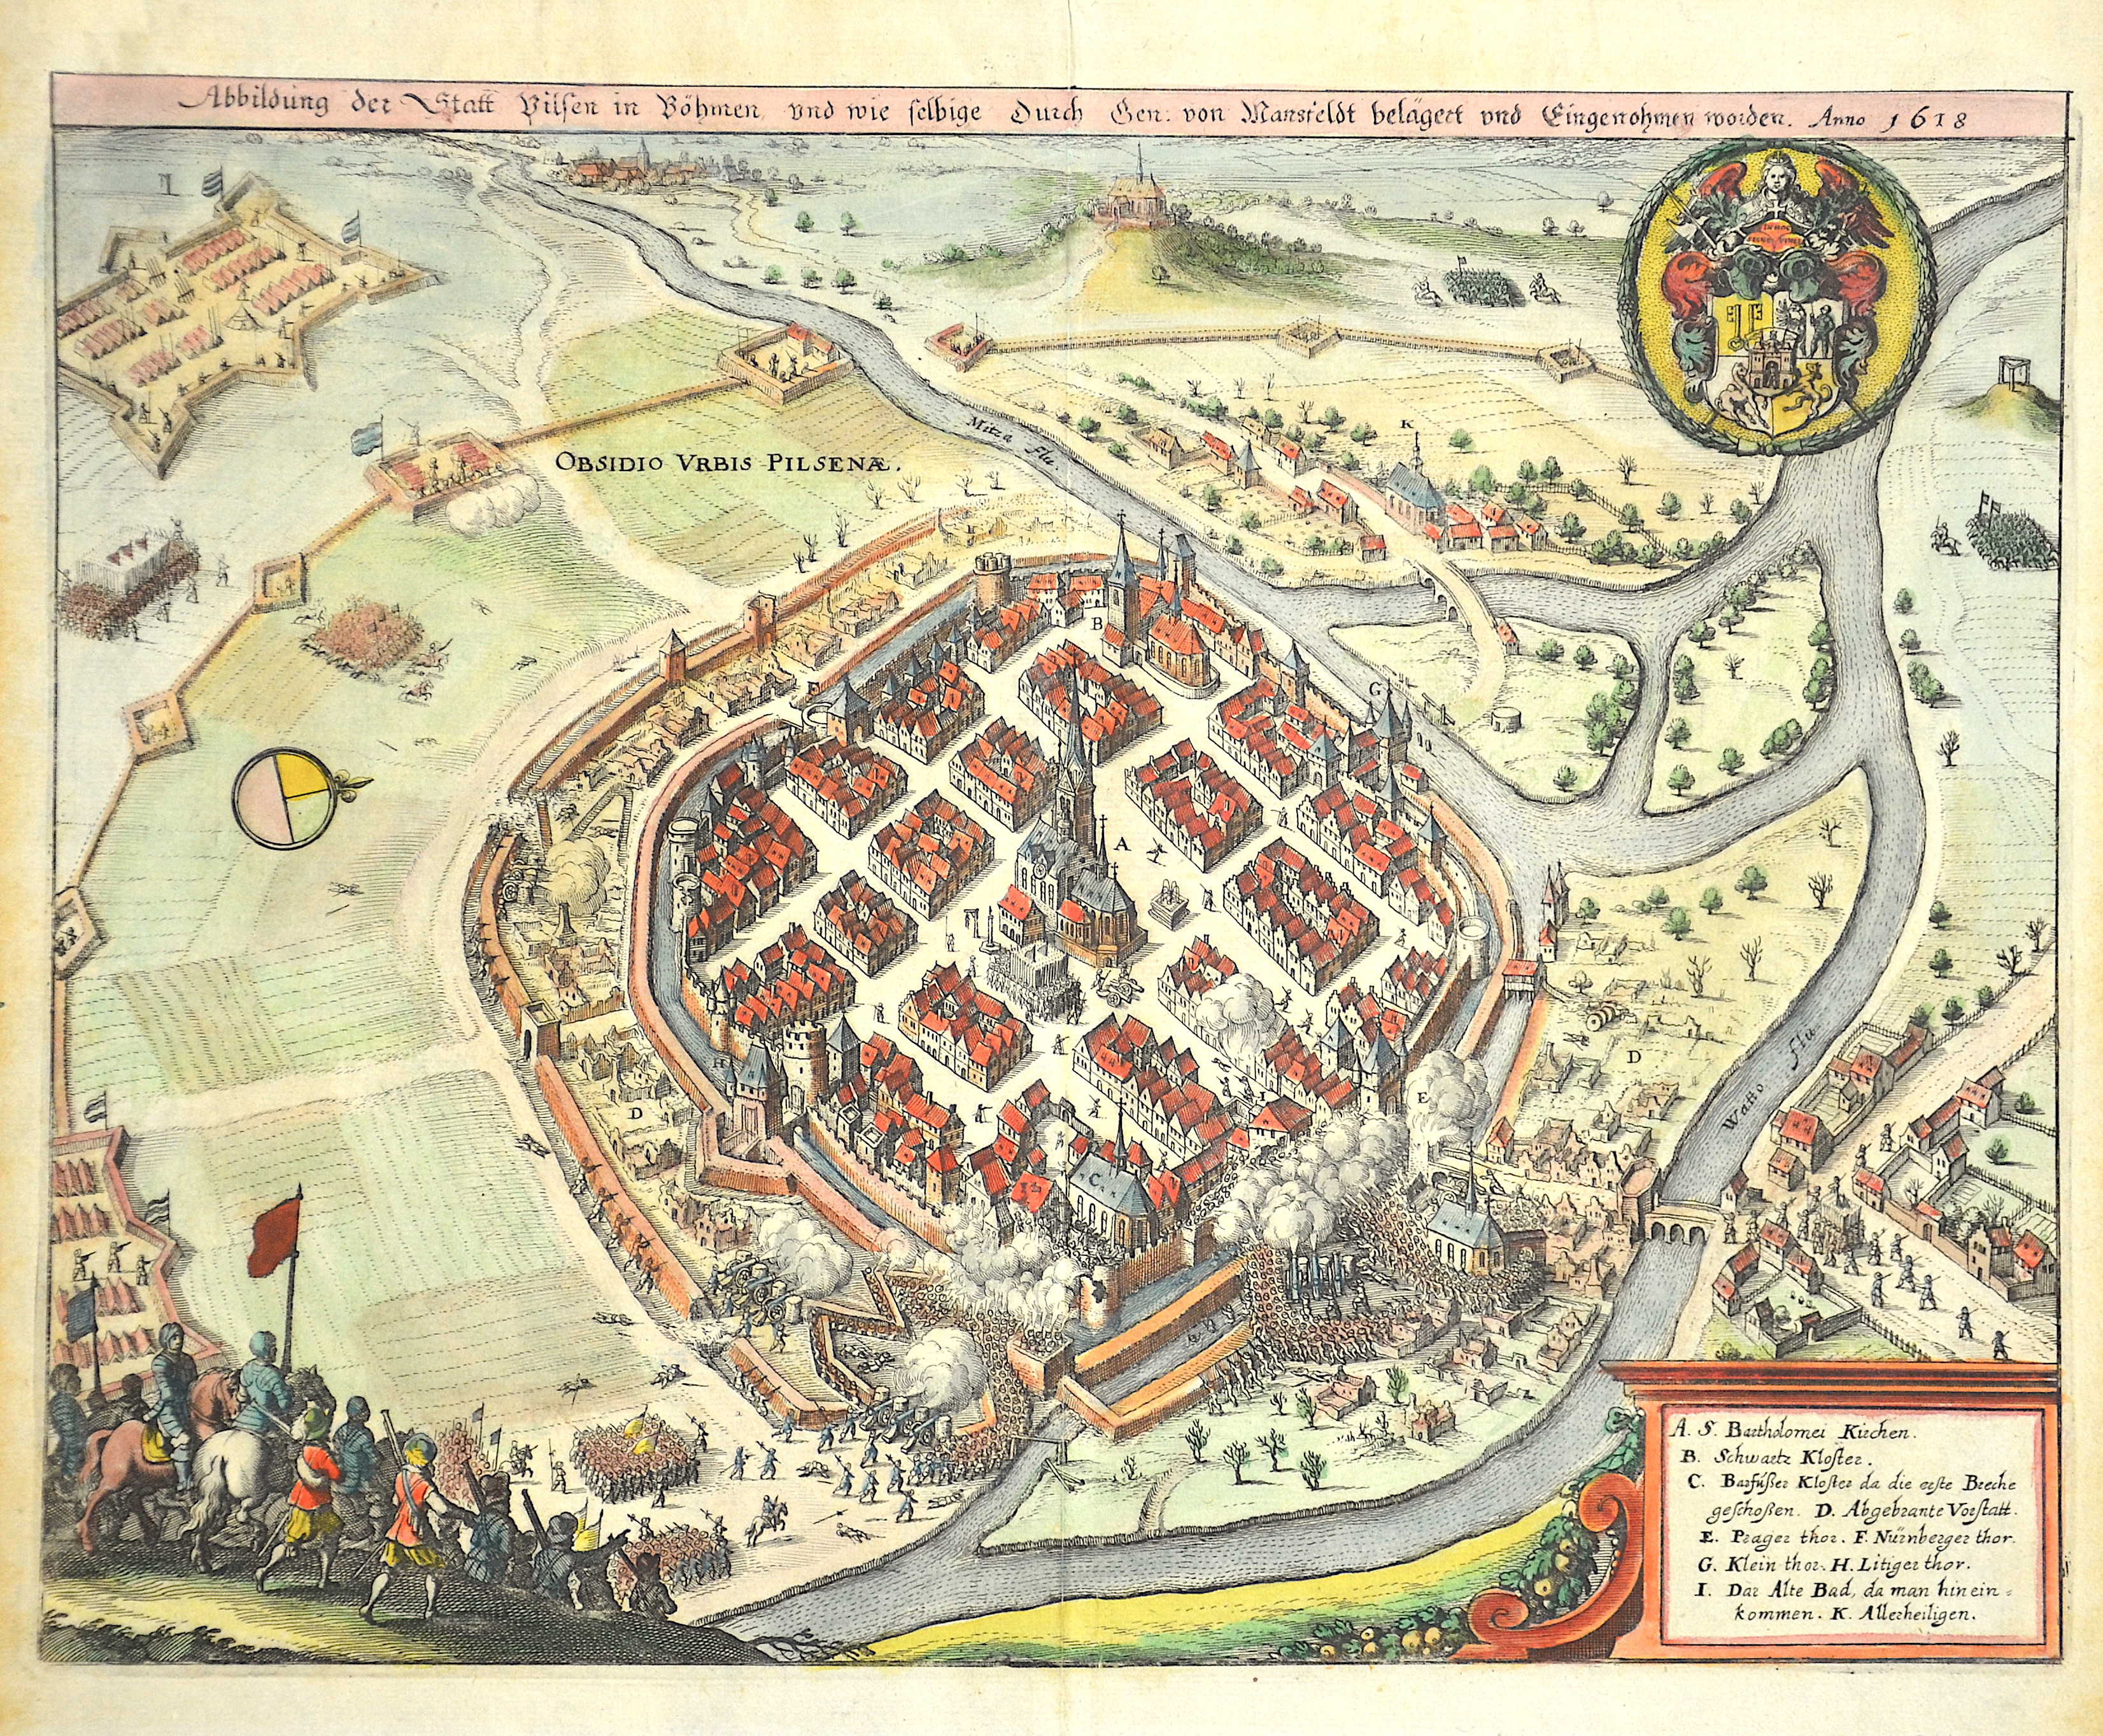 Merian Matthäus Abbildung der Statt Vilsen in Böhmen, und wie selbige durch den von Mansfeldt belägert und Eingenohmen worden. Anno 1618